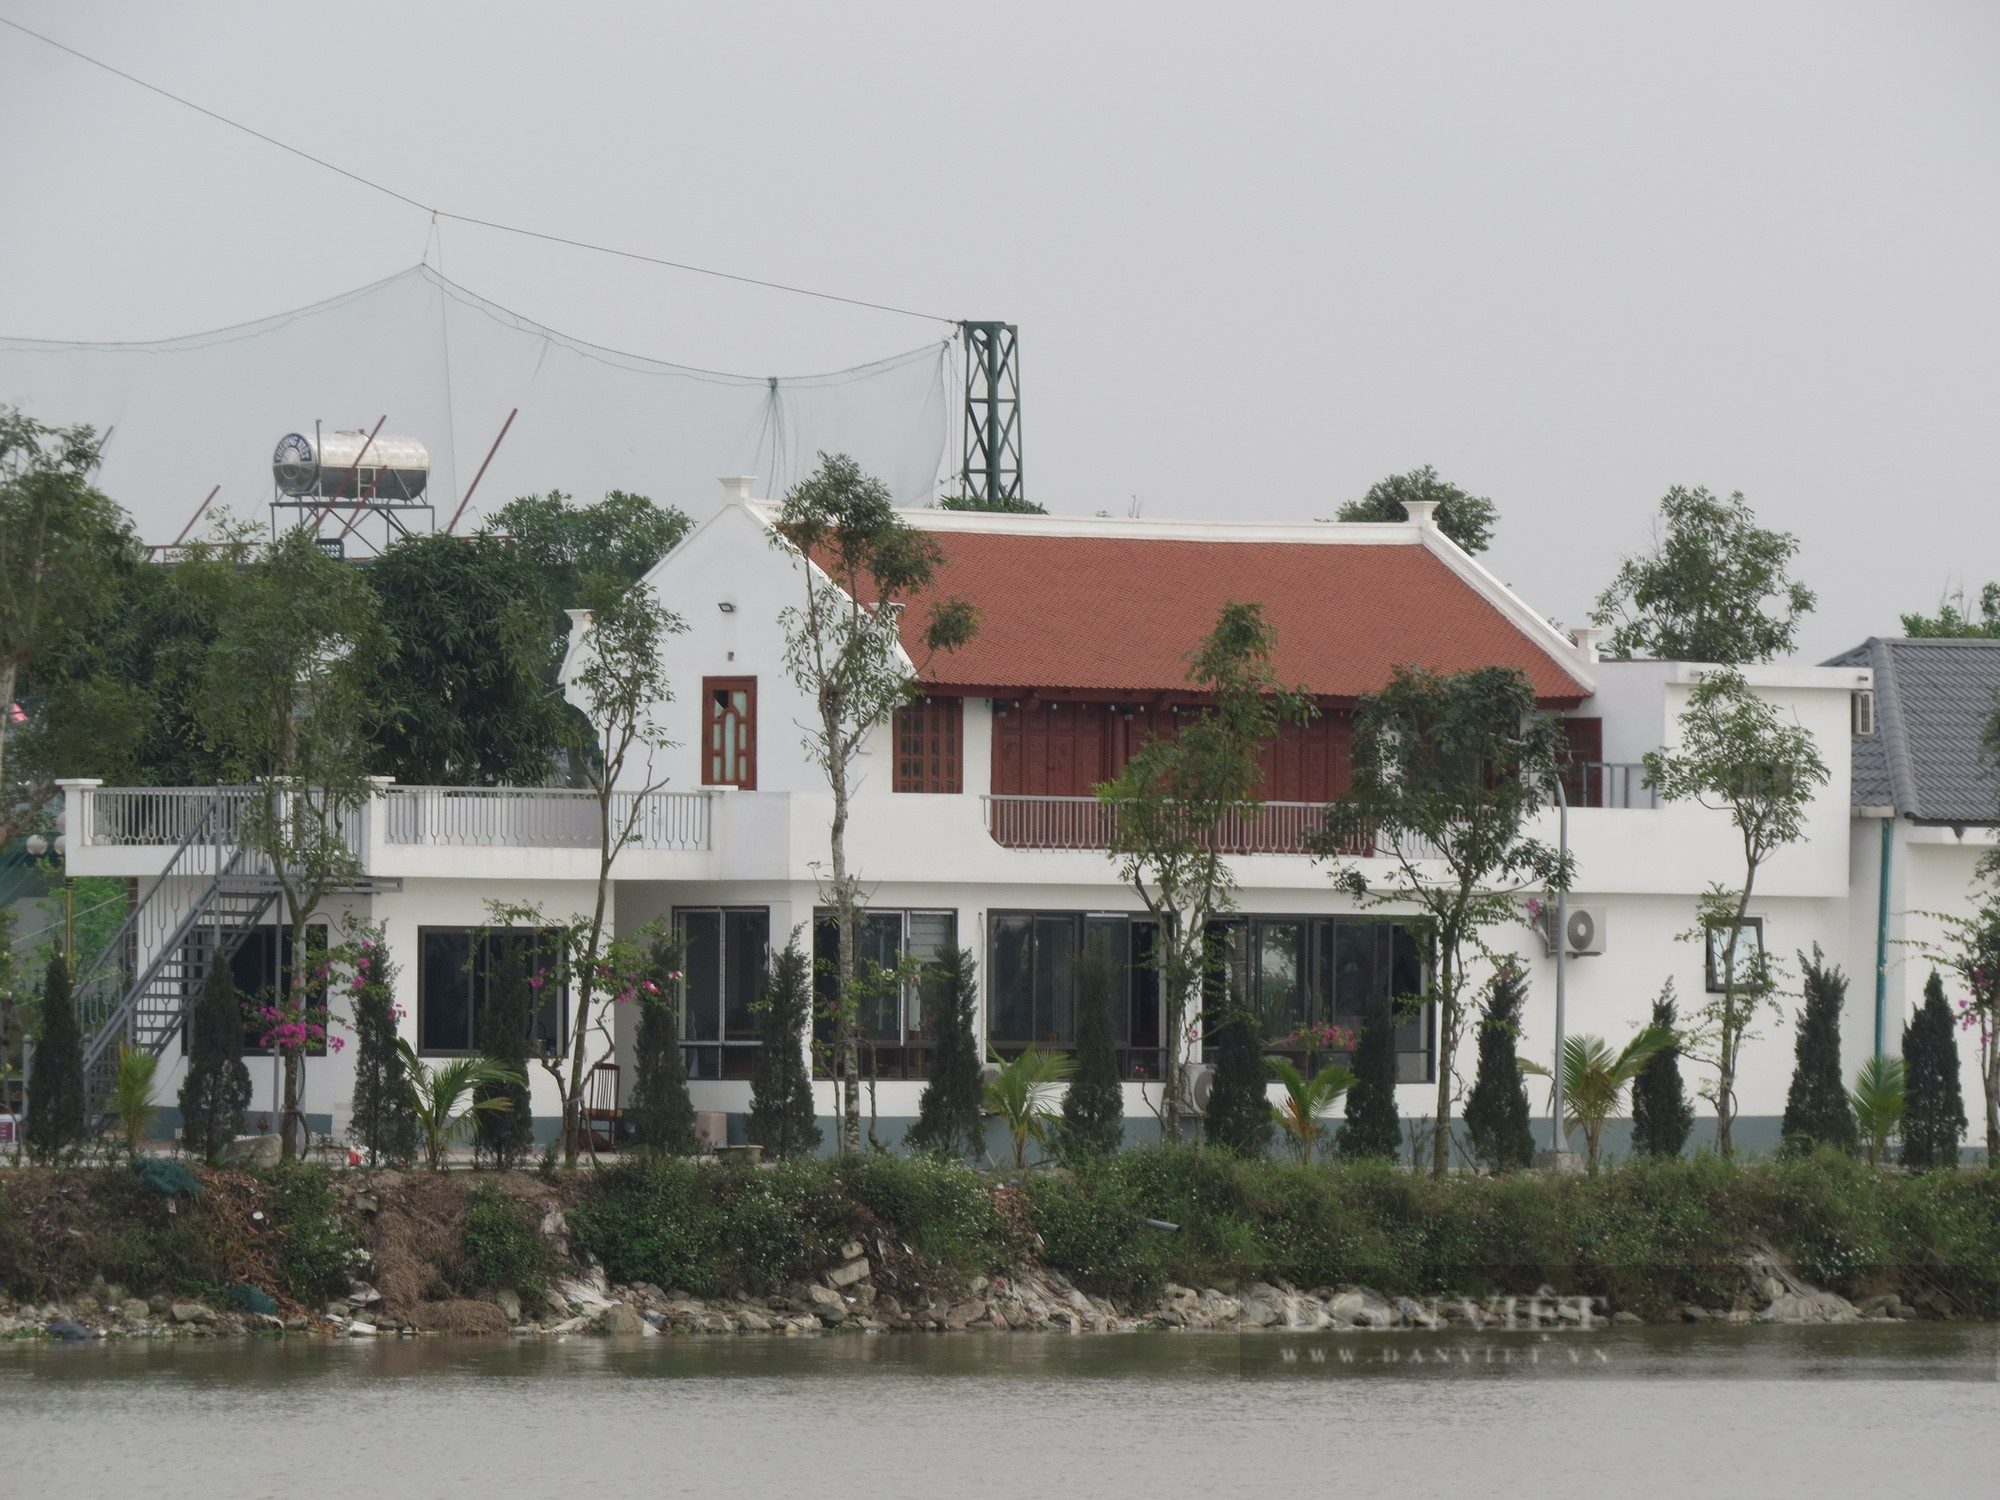 Trung tâm thể dục thể thao “mọc” trên bãi sông tại Nam Định, 18 lần lập biên bản “cho có” - Ảnh 3.